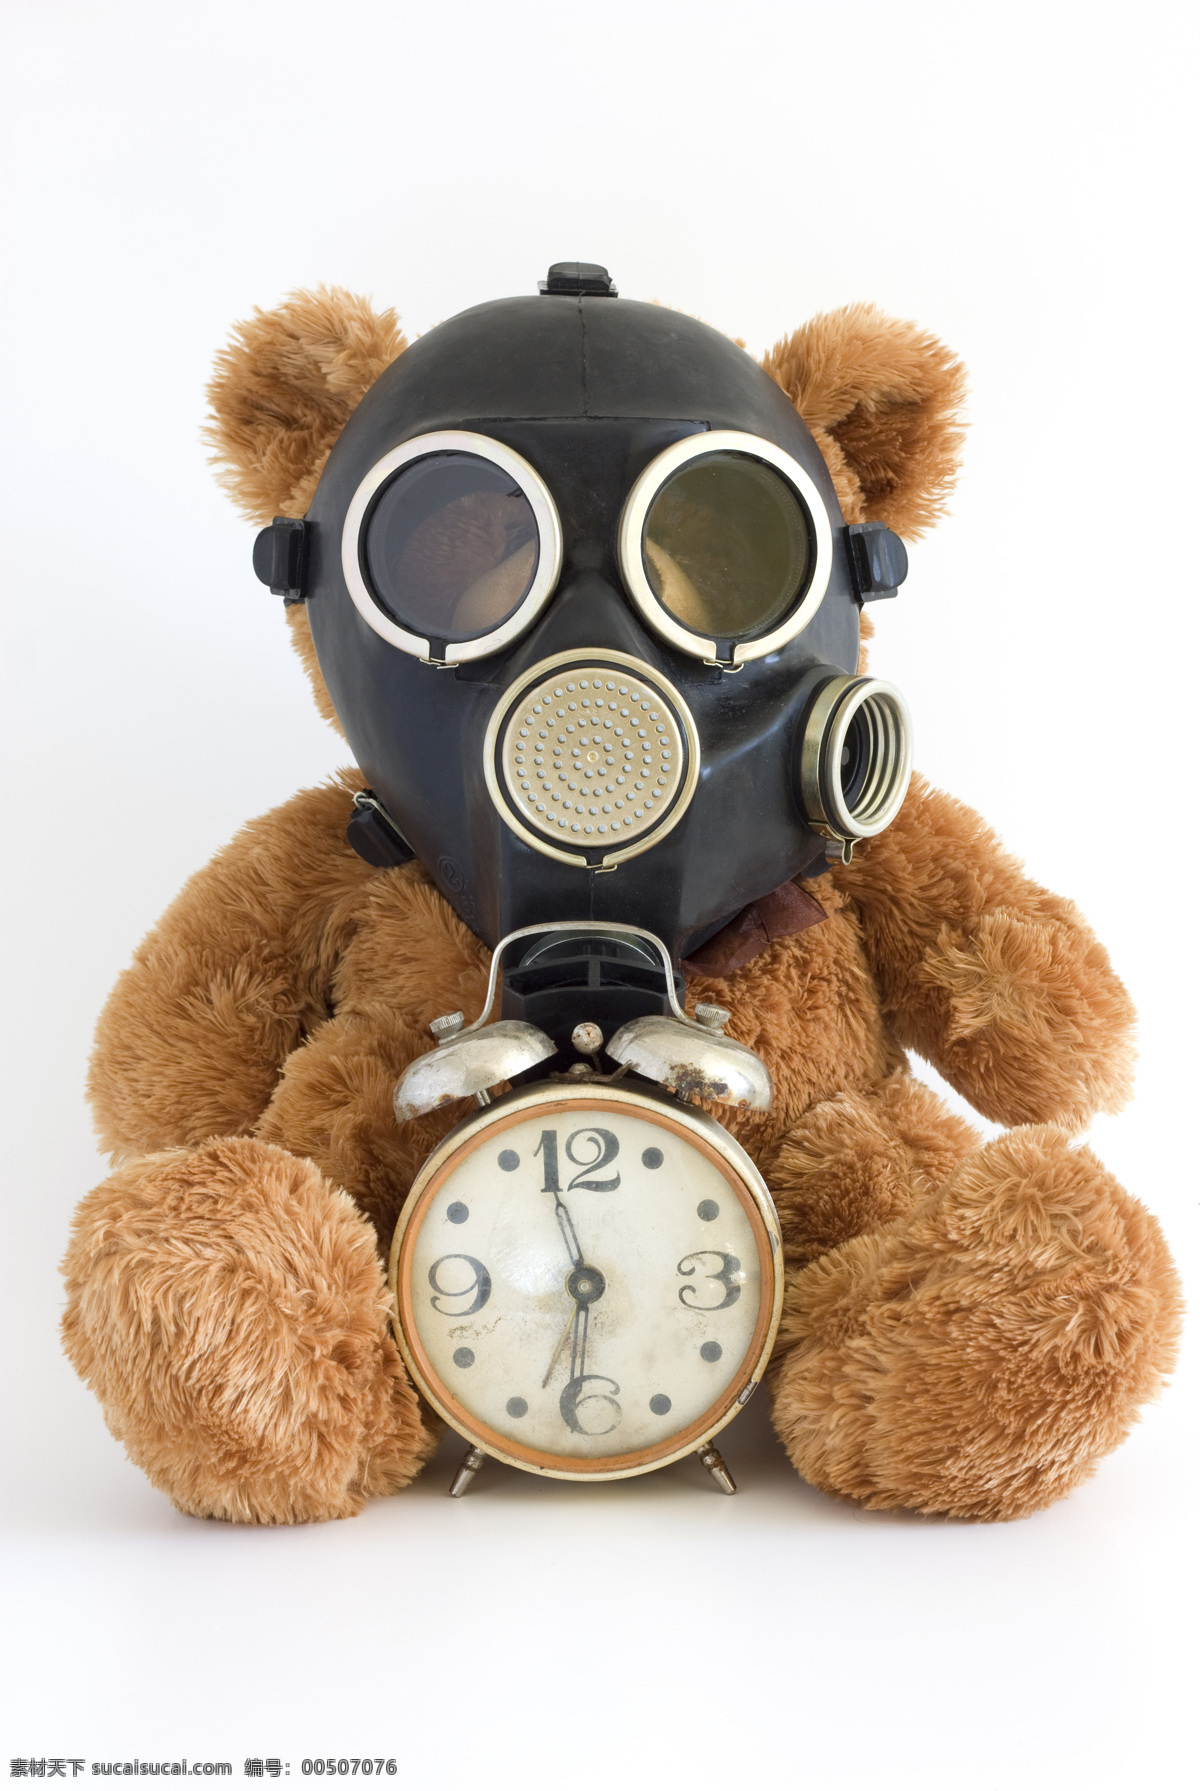 防毒面具 面具 闹钟 生化危机 生活百科 生活素材 泰迪熊 泰迪 熊 定时炸弹 玩具熊 炸弹 生化炸弹 战争 威胁